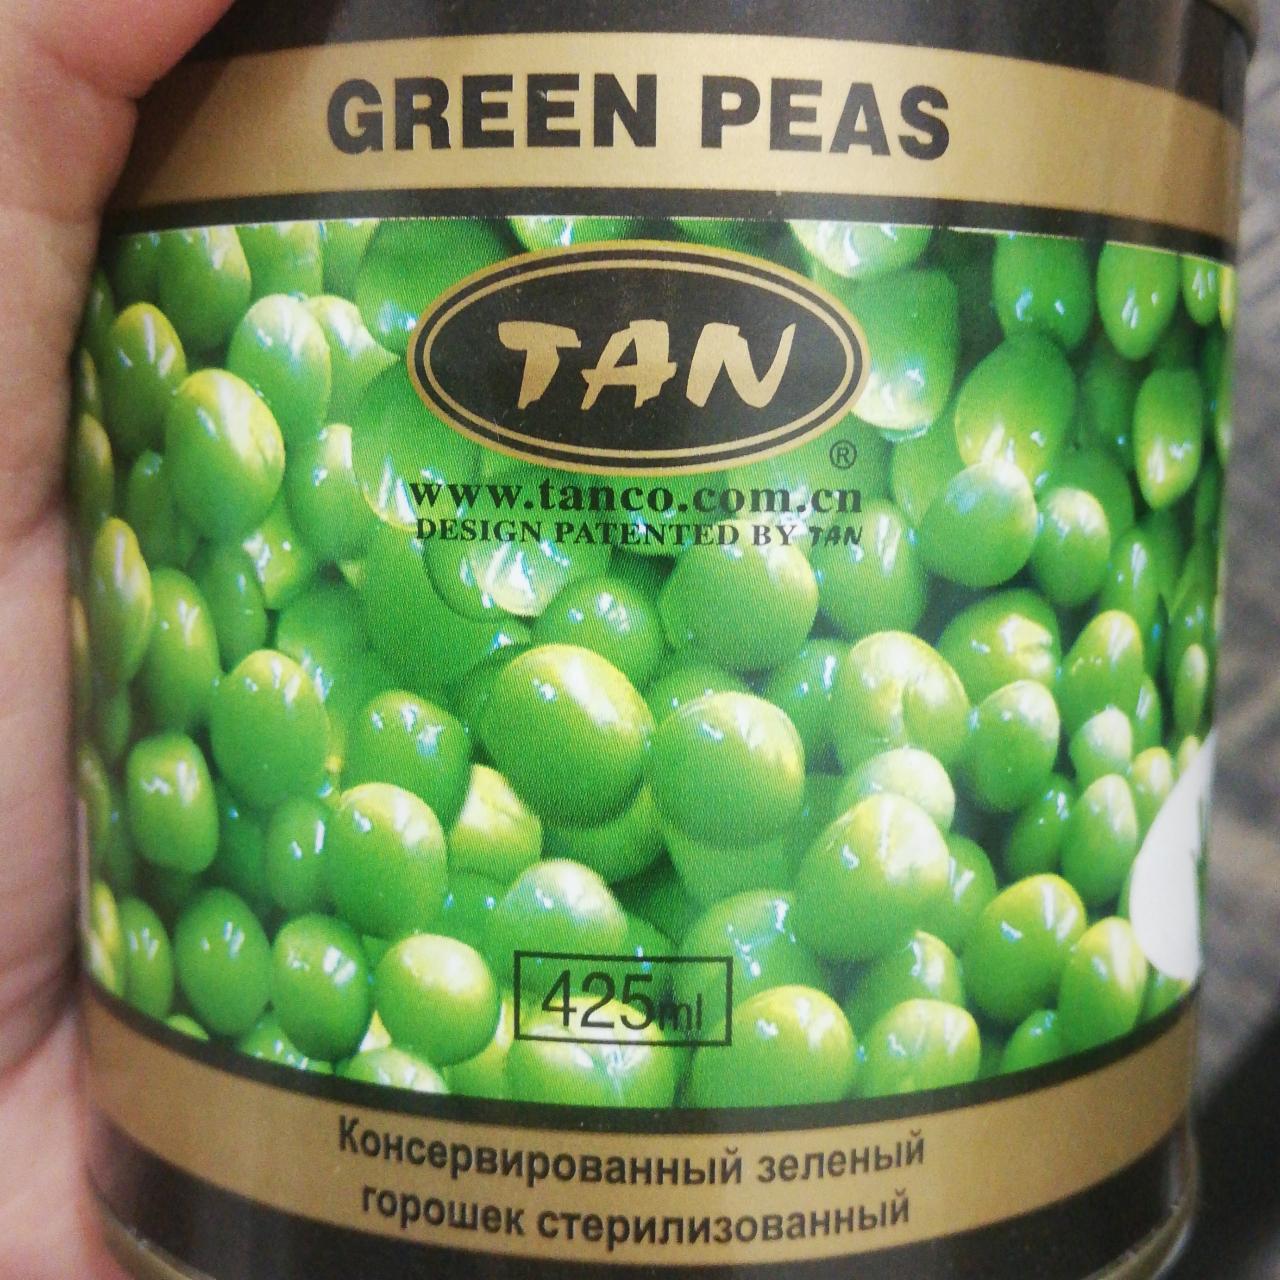 Фото - Горошек зелёный консервированный Tan